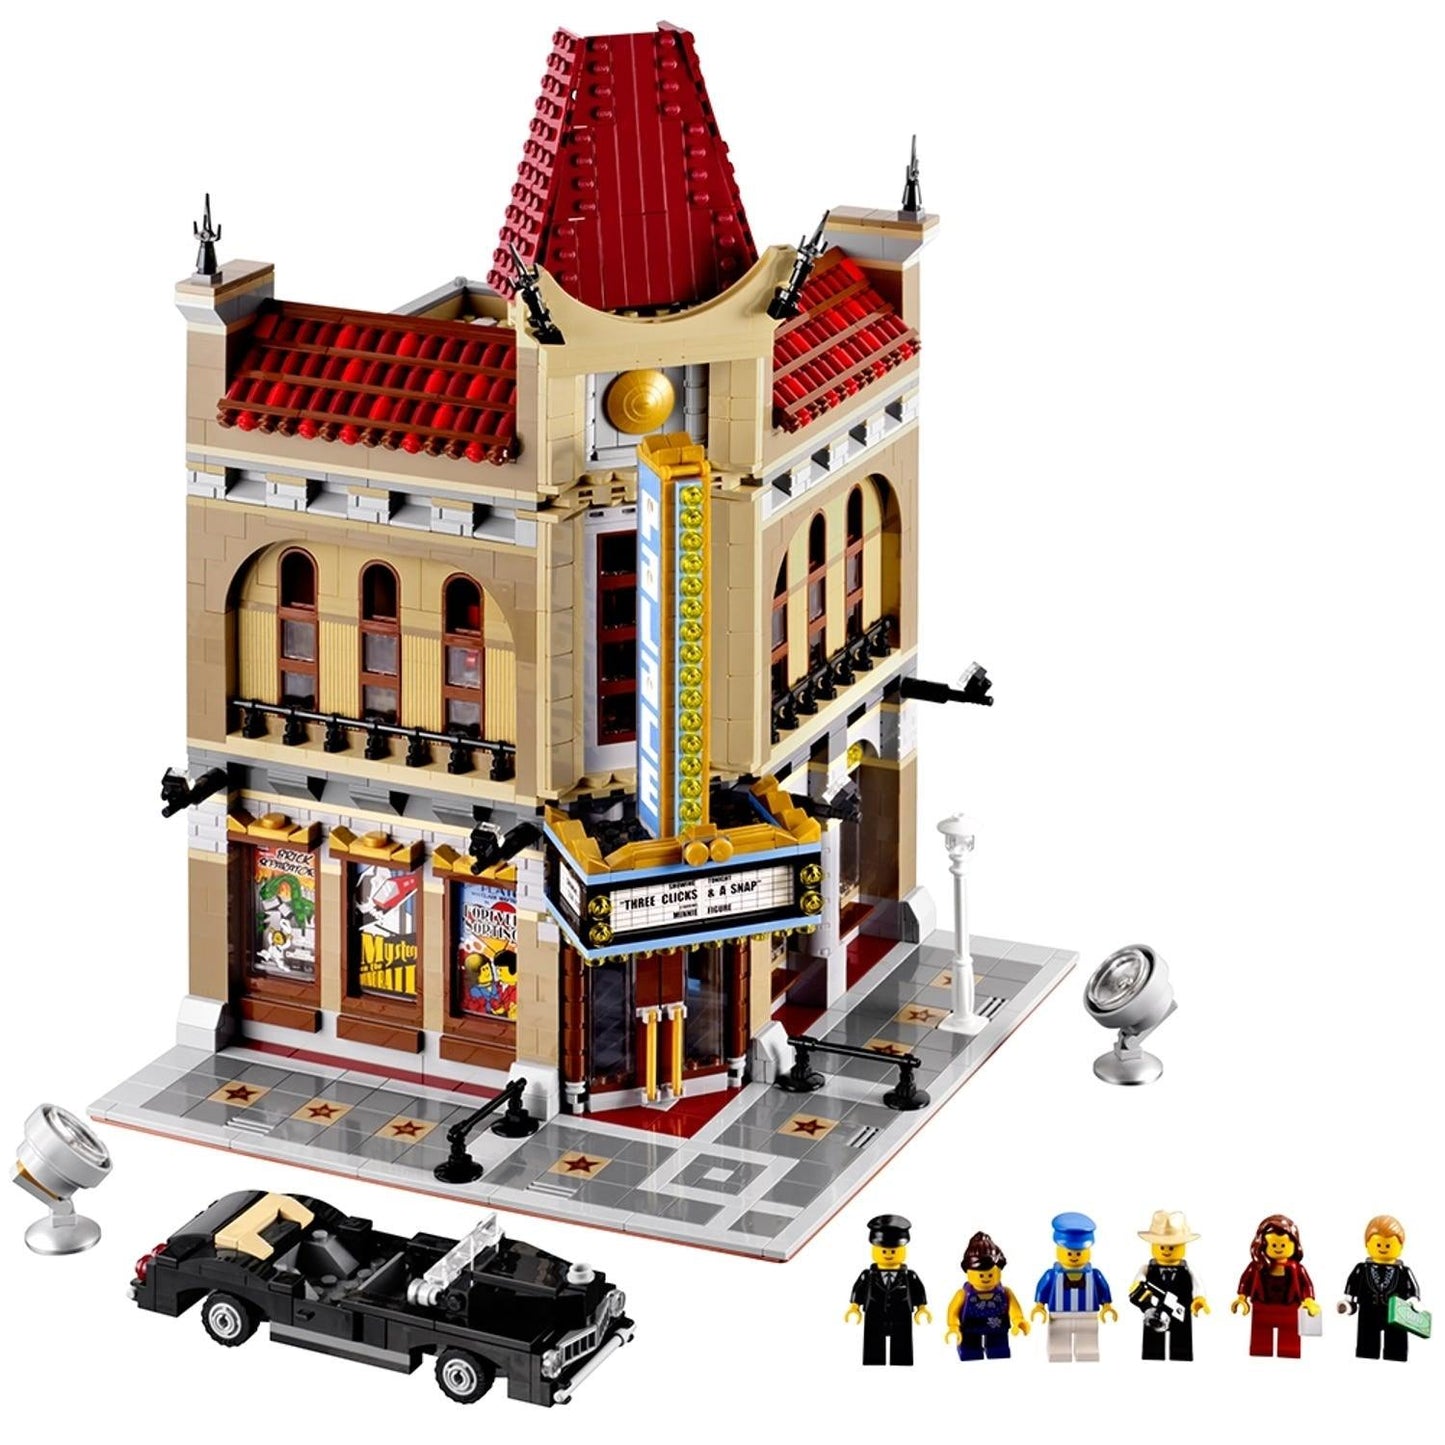 LEGO Creator Expert Palace Cinema / Paleisbioscoop 10232 Creator Expert LEGO CREATOR EXPERT MODULAIR @ 2TTOYS LEGO €. 399.99